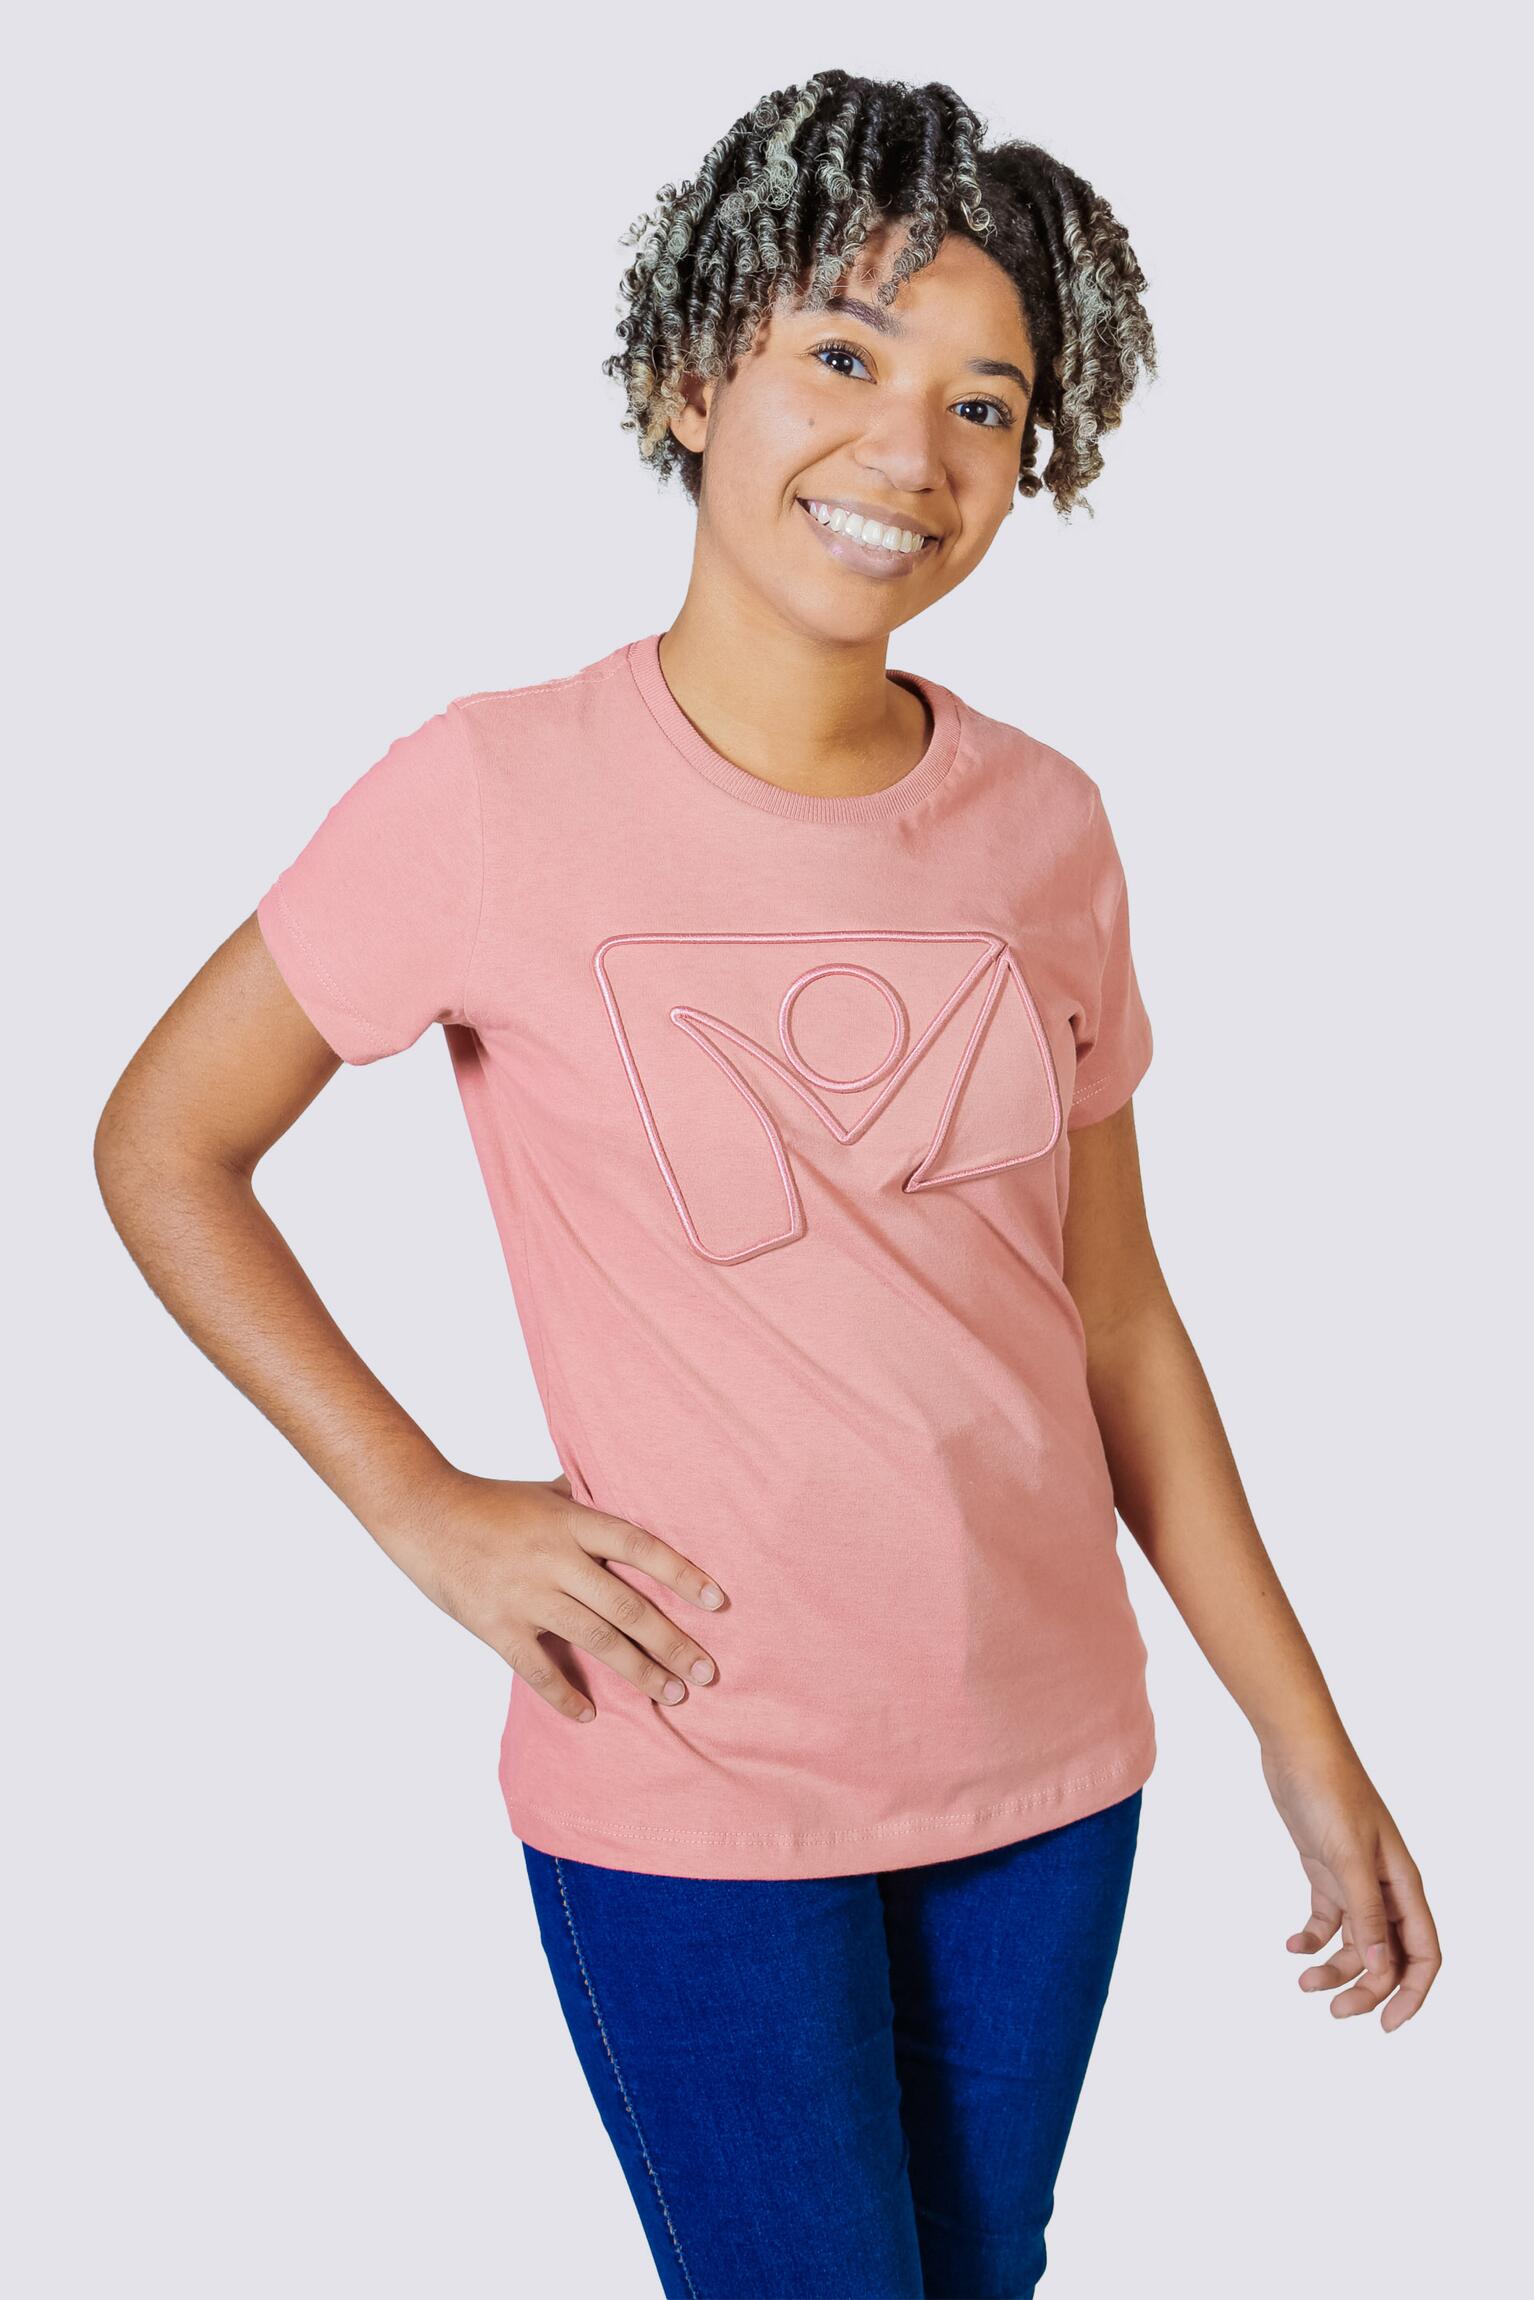 Camiseta da Novo Tempo (Feminino, Amarelo, Azul, Rosé e Verde)